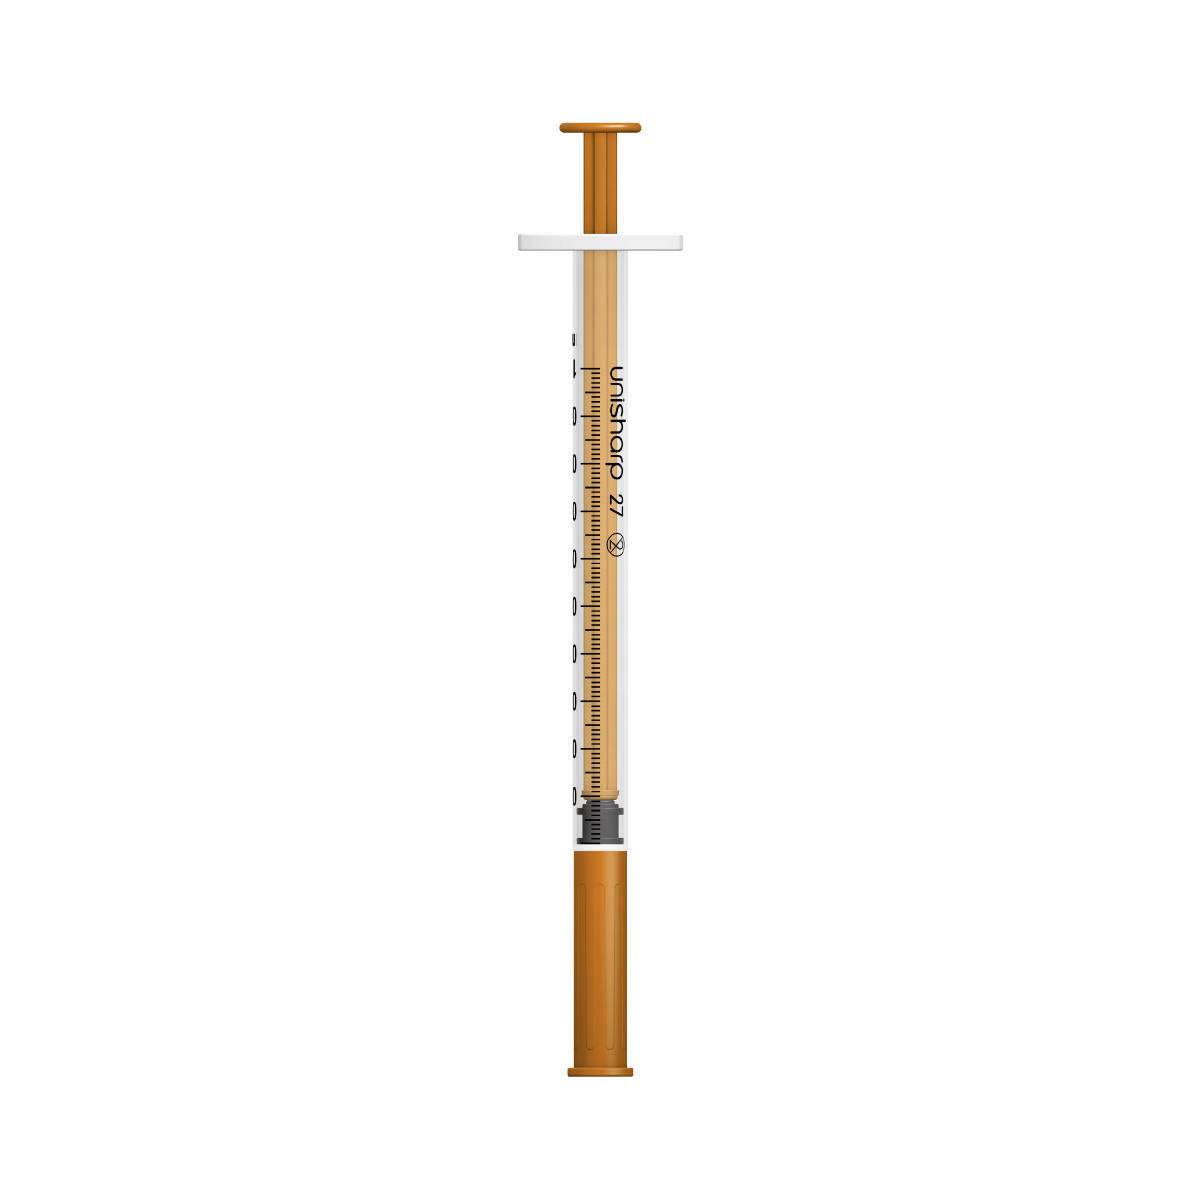 1ml 0.5 inch 27g Orange Unisharp Syringe and Needle u100